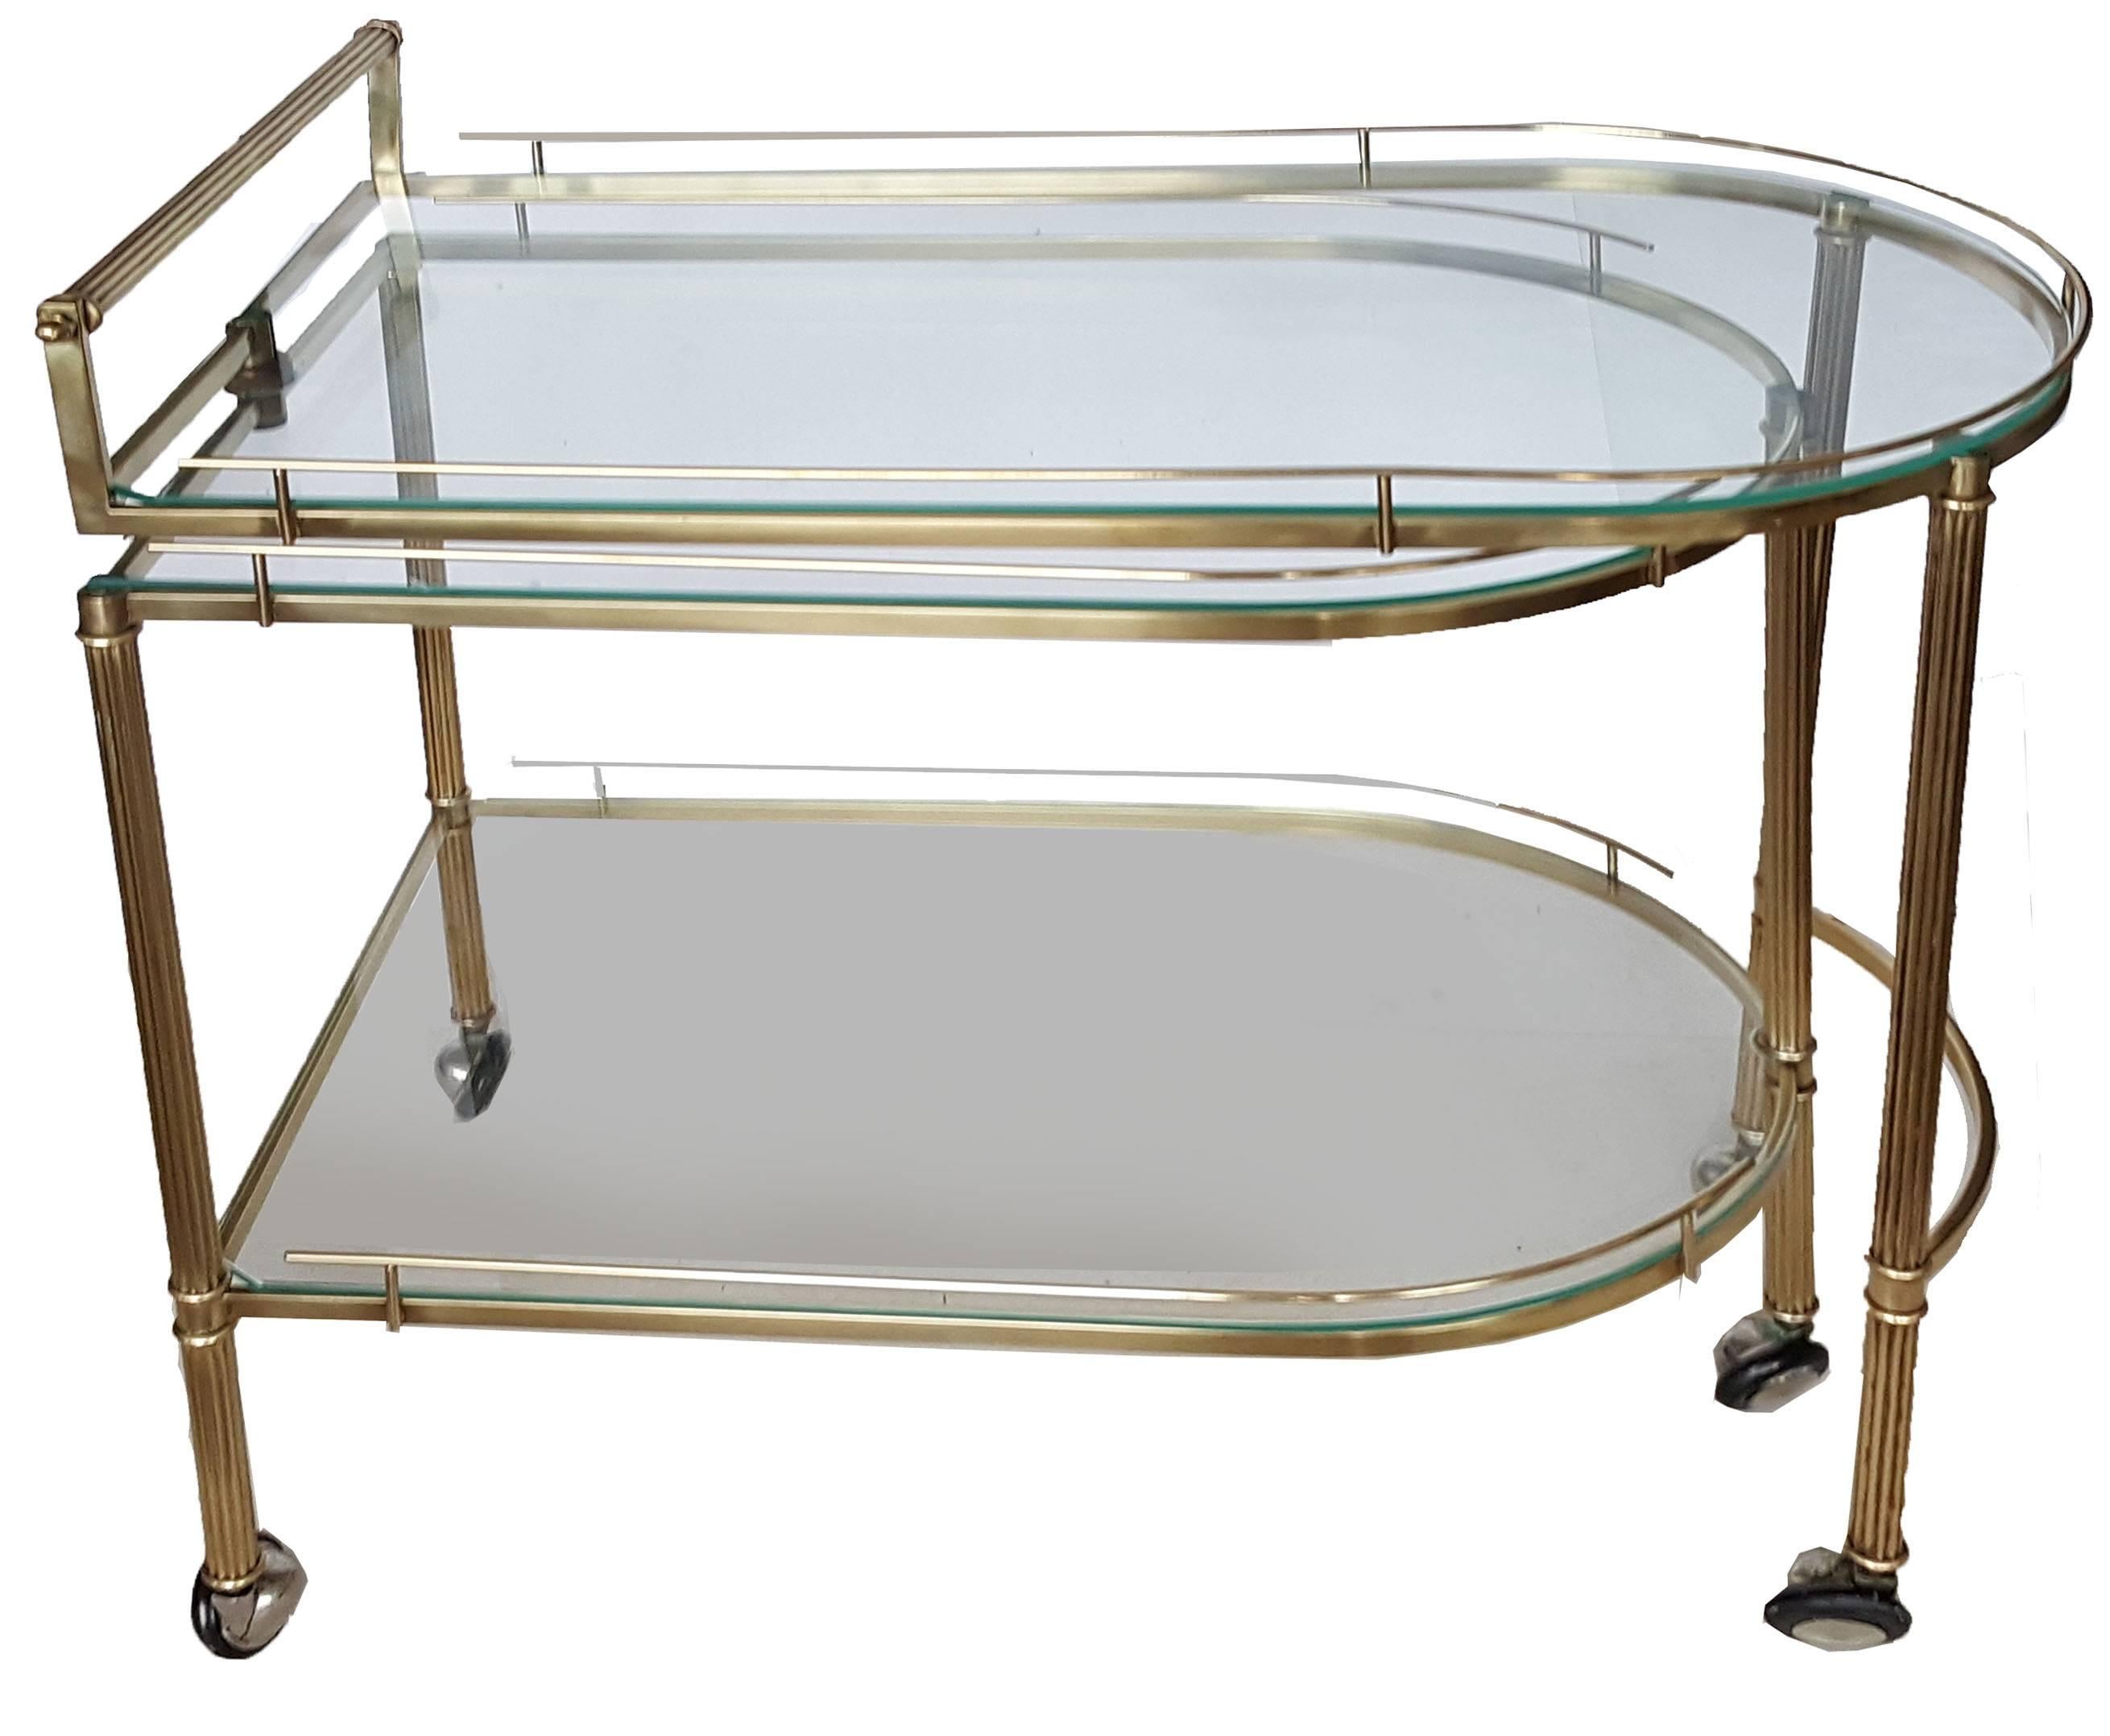 Superb brass articulated Italian bar cart, three-level.